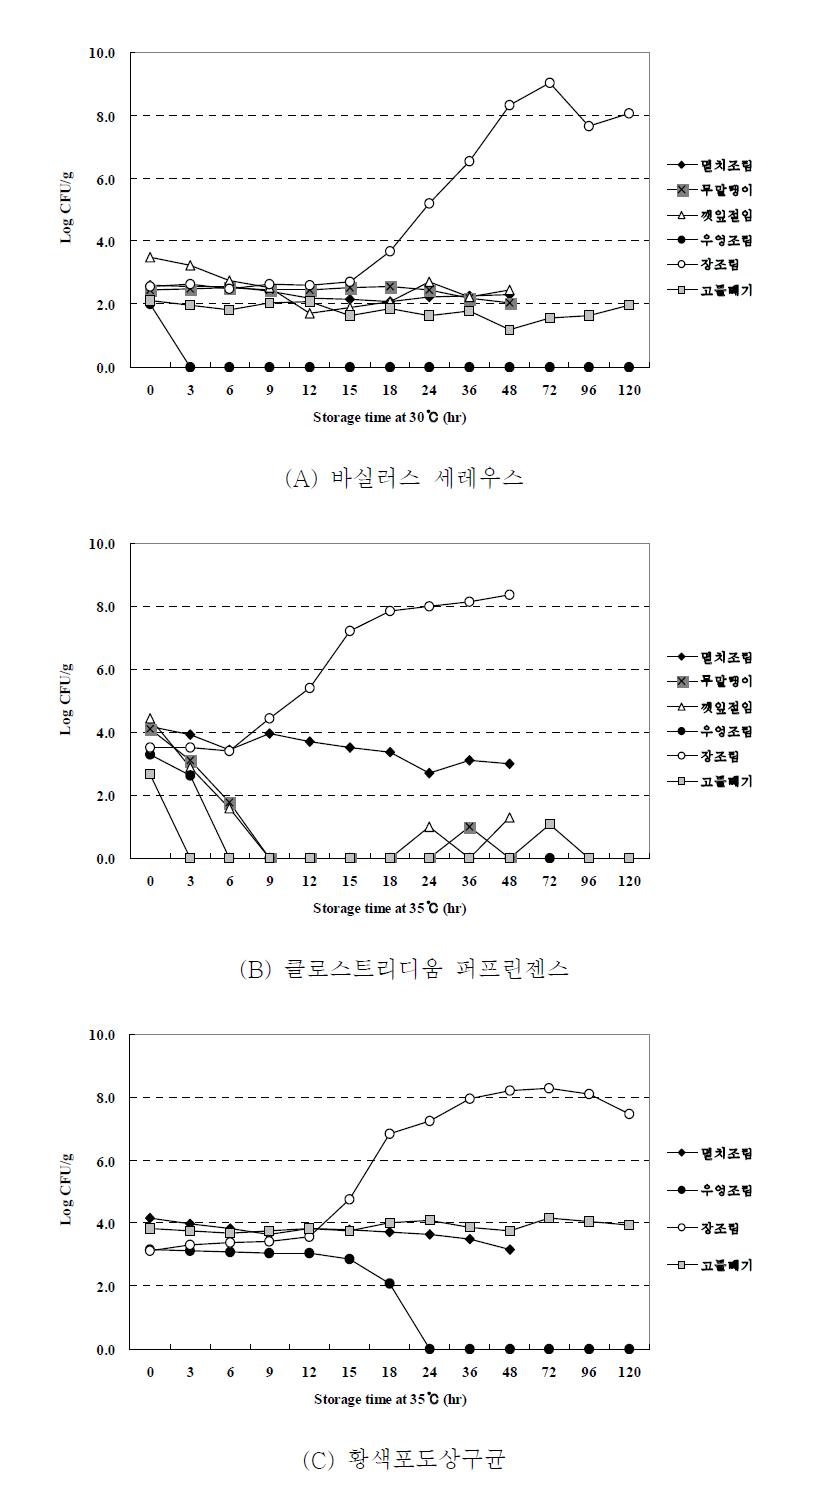 35℃에서 절임식품등의 성장패턴(2010년 식약청 연구보고서)